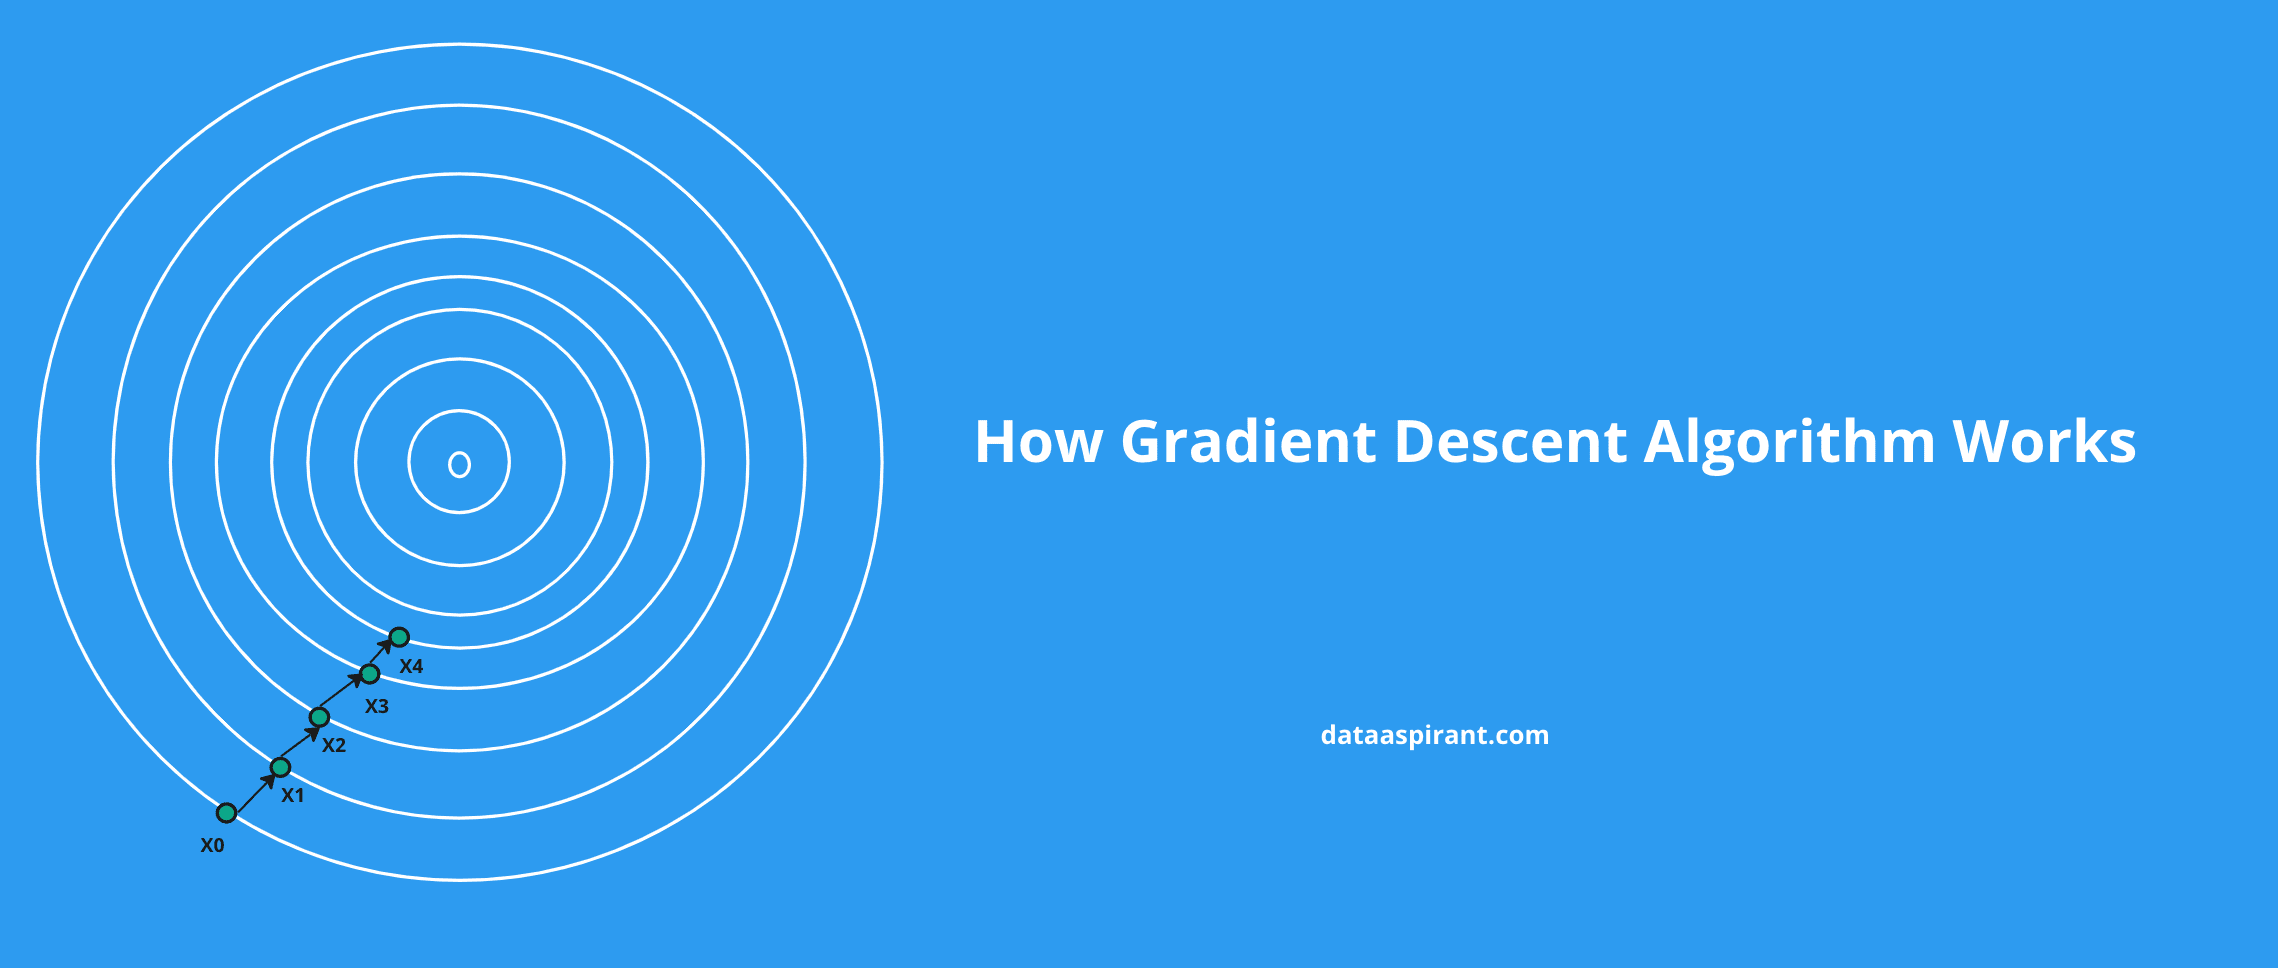 How Gradient Descent Algorithm Works